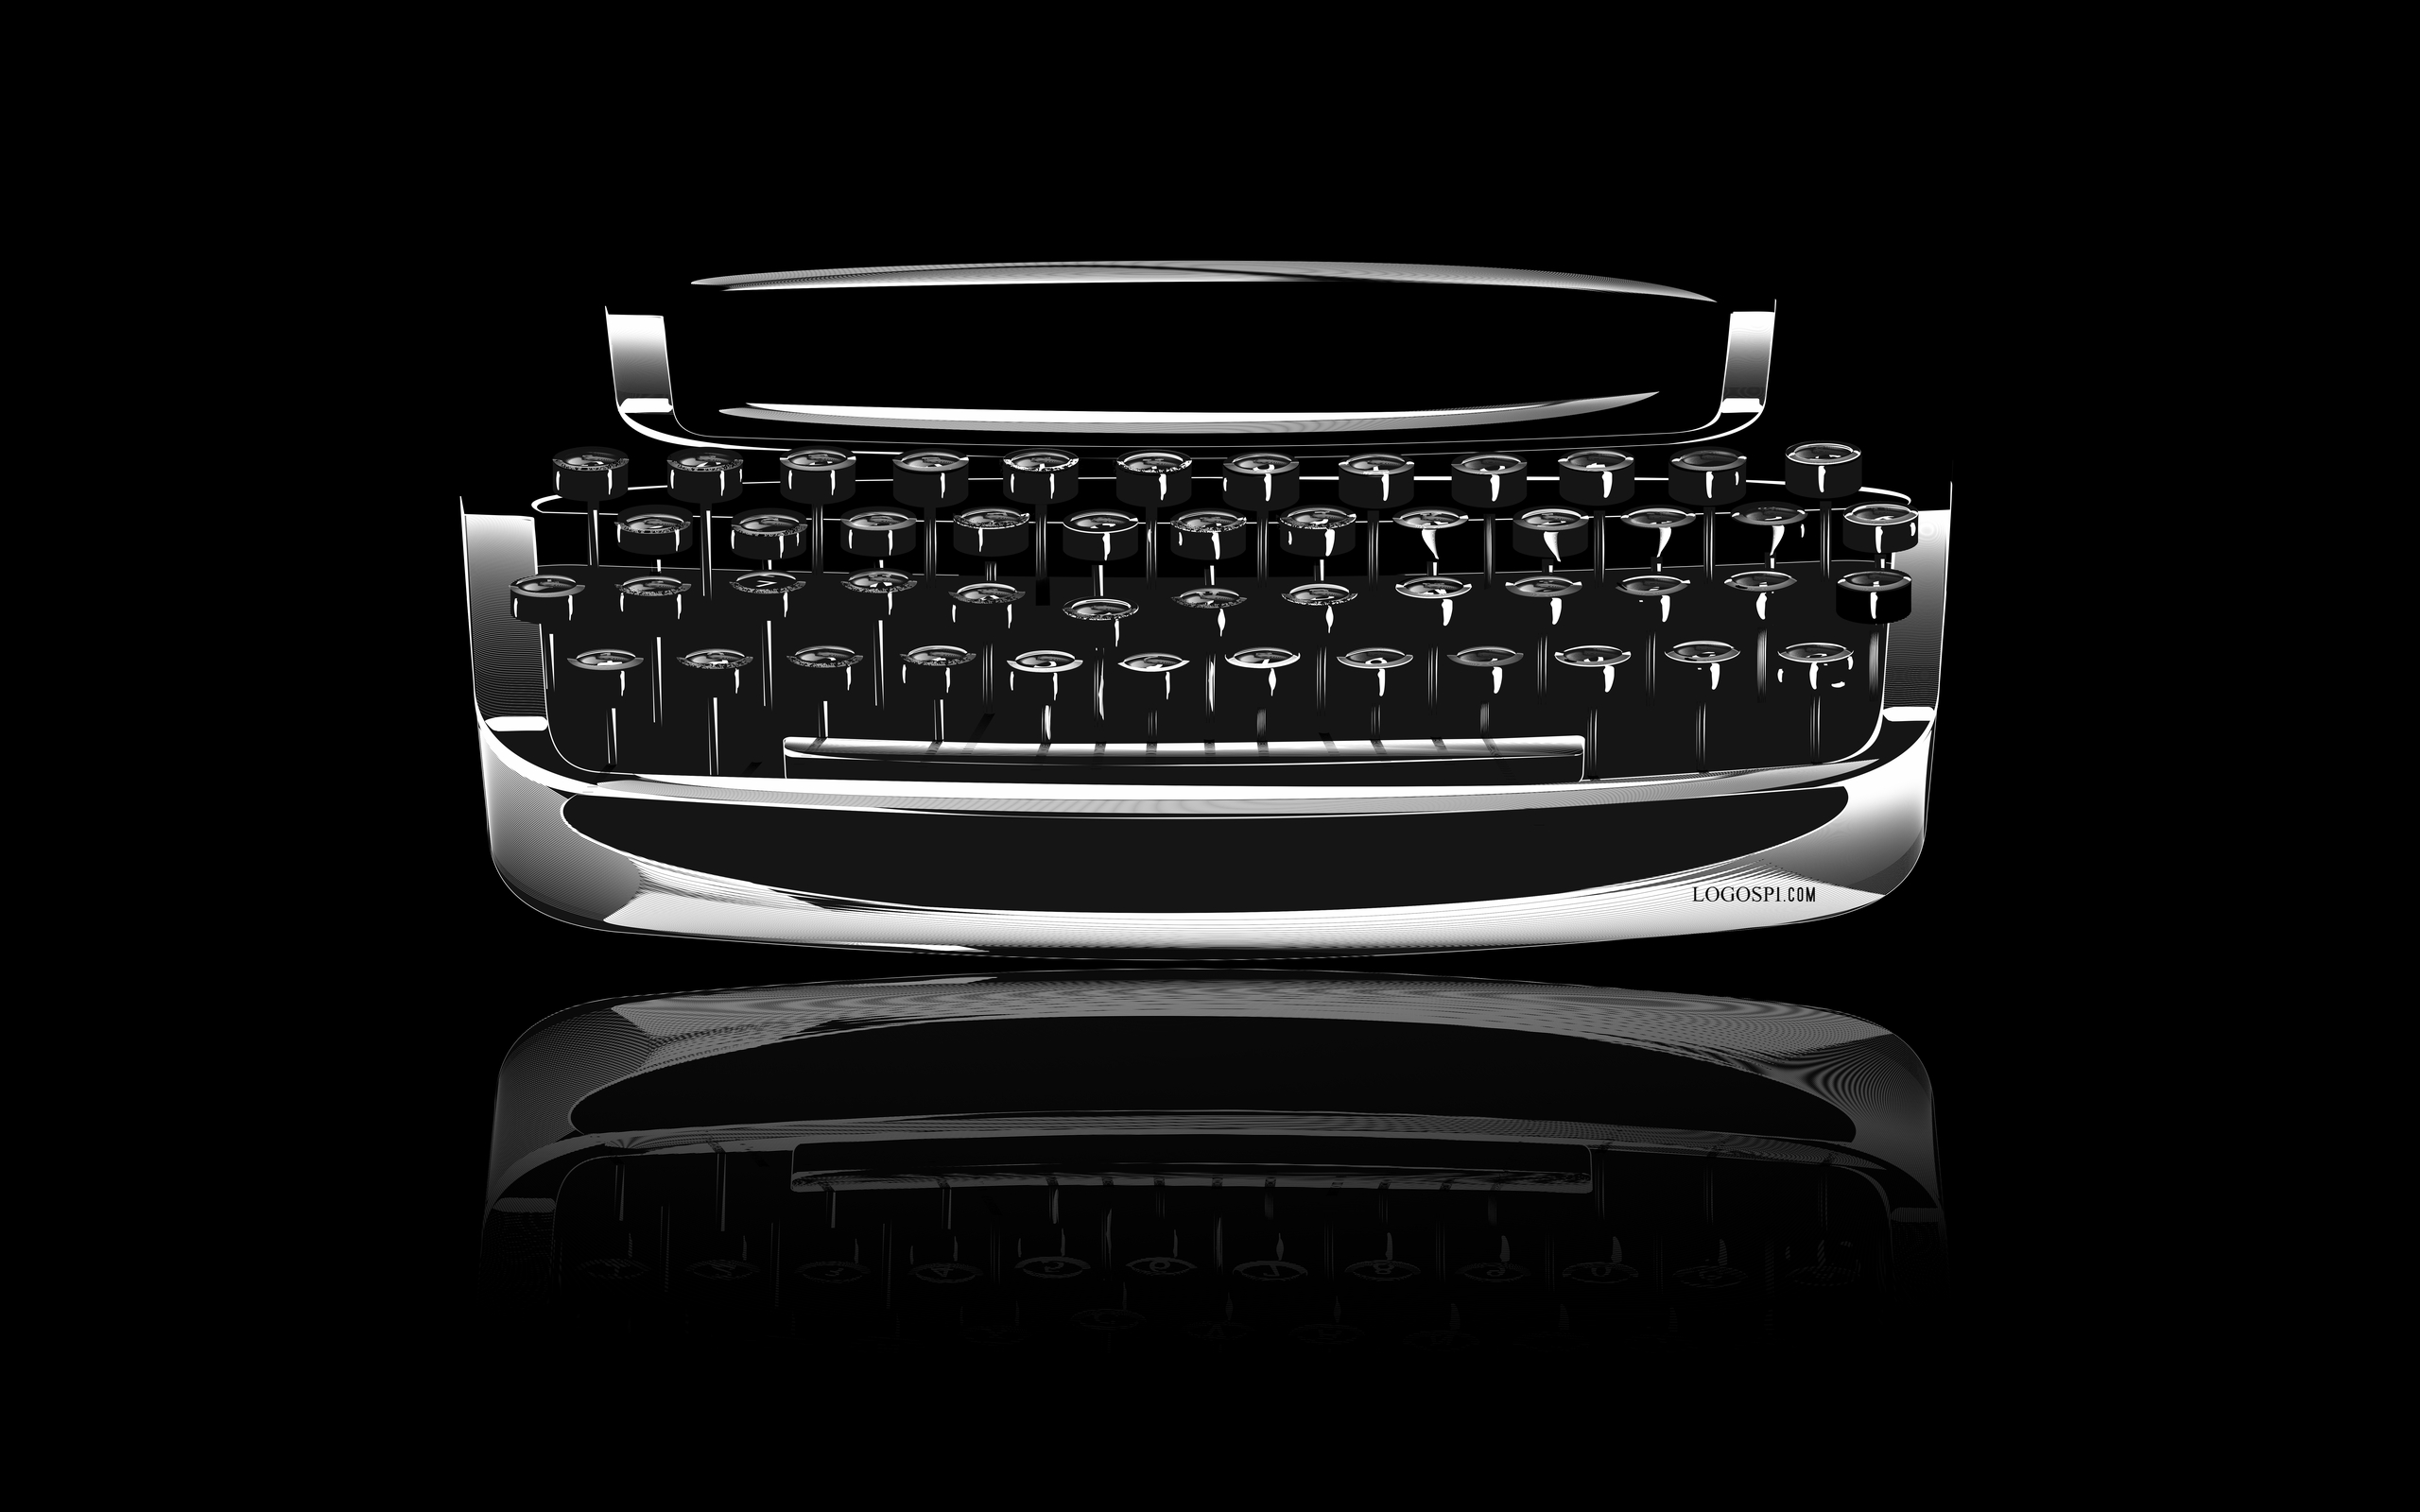 Man Made Typewriter HD Wallpaper | Background Image